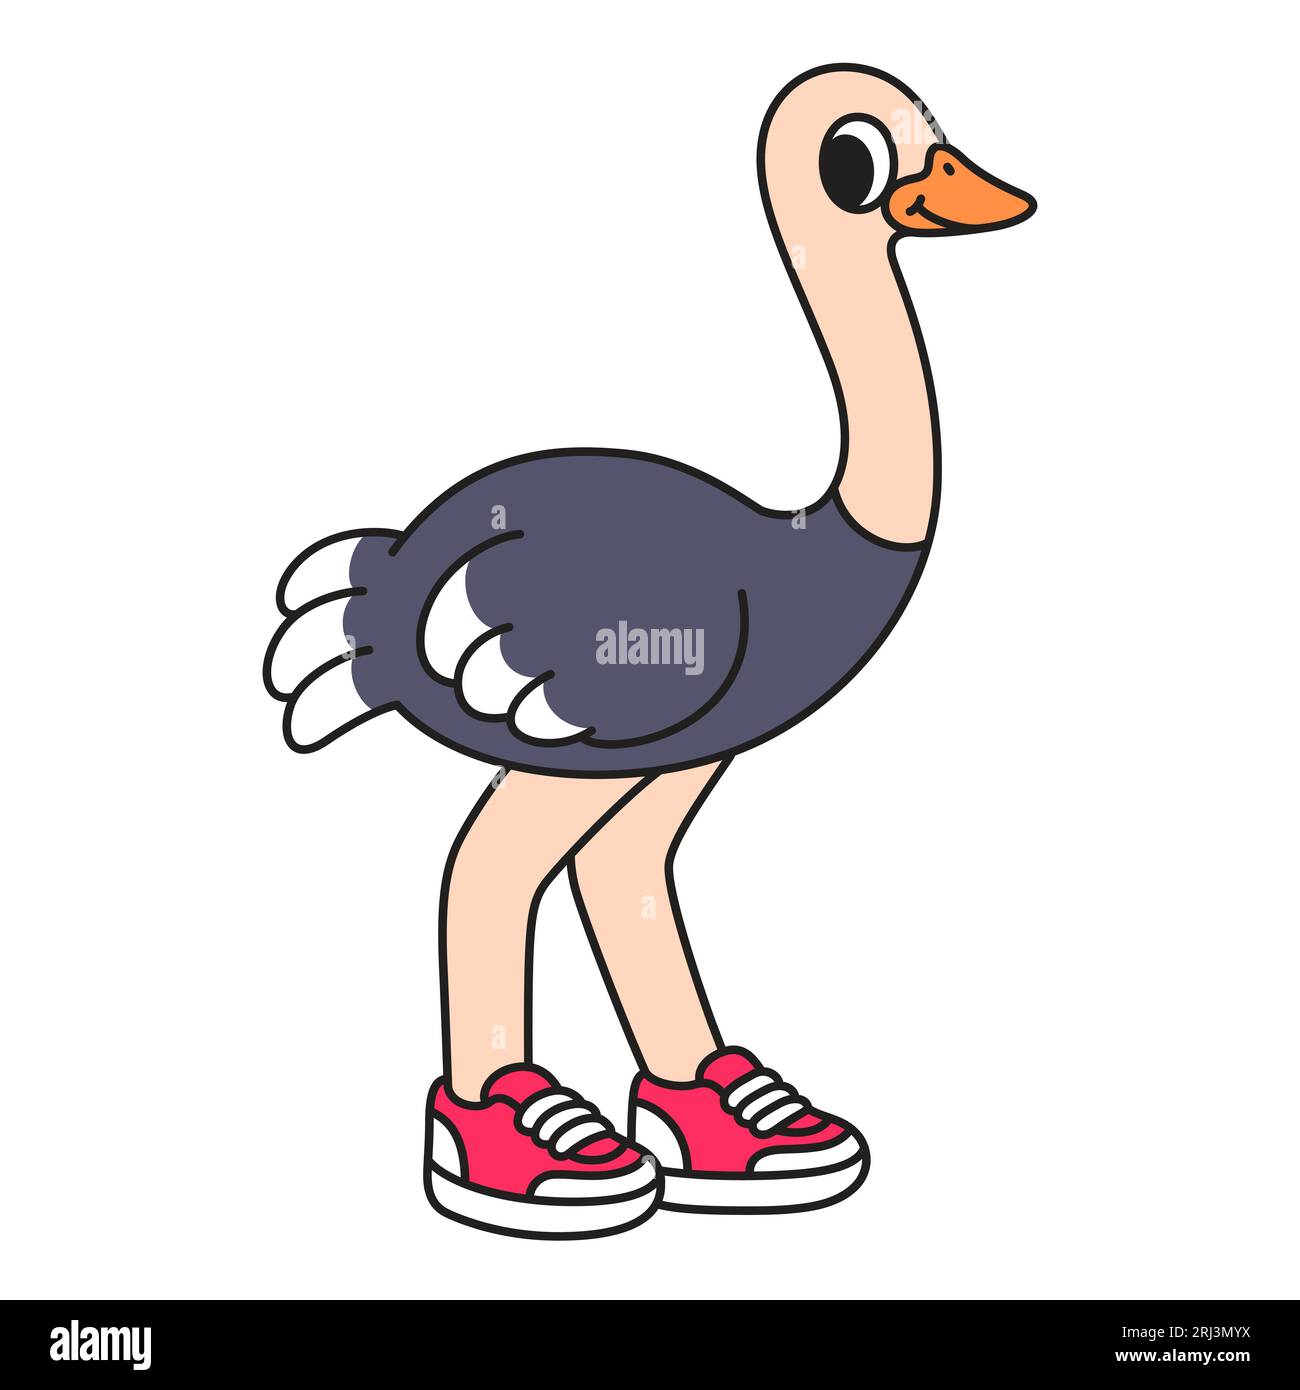 Struzzo dei cartoni animati che indossa scarpe da ginnastica, divertente disegno dei personaggi in stile fumetto, illustrazione di clip art vettoriale. Illustrazione Vettoriale